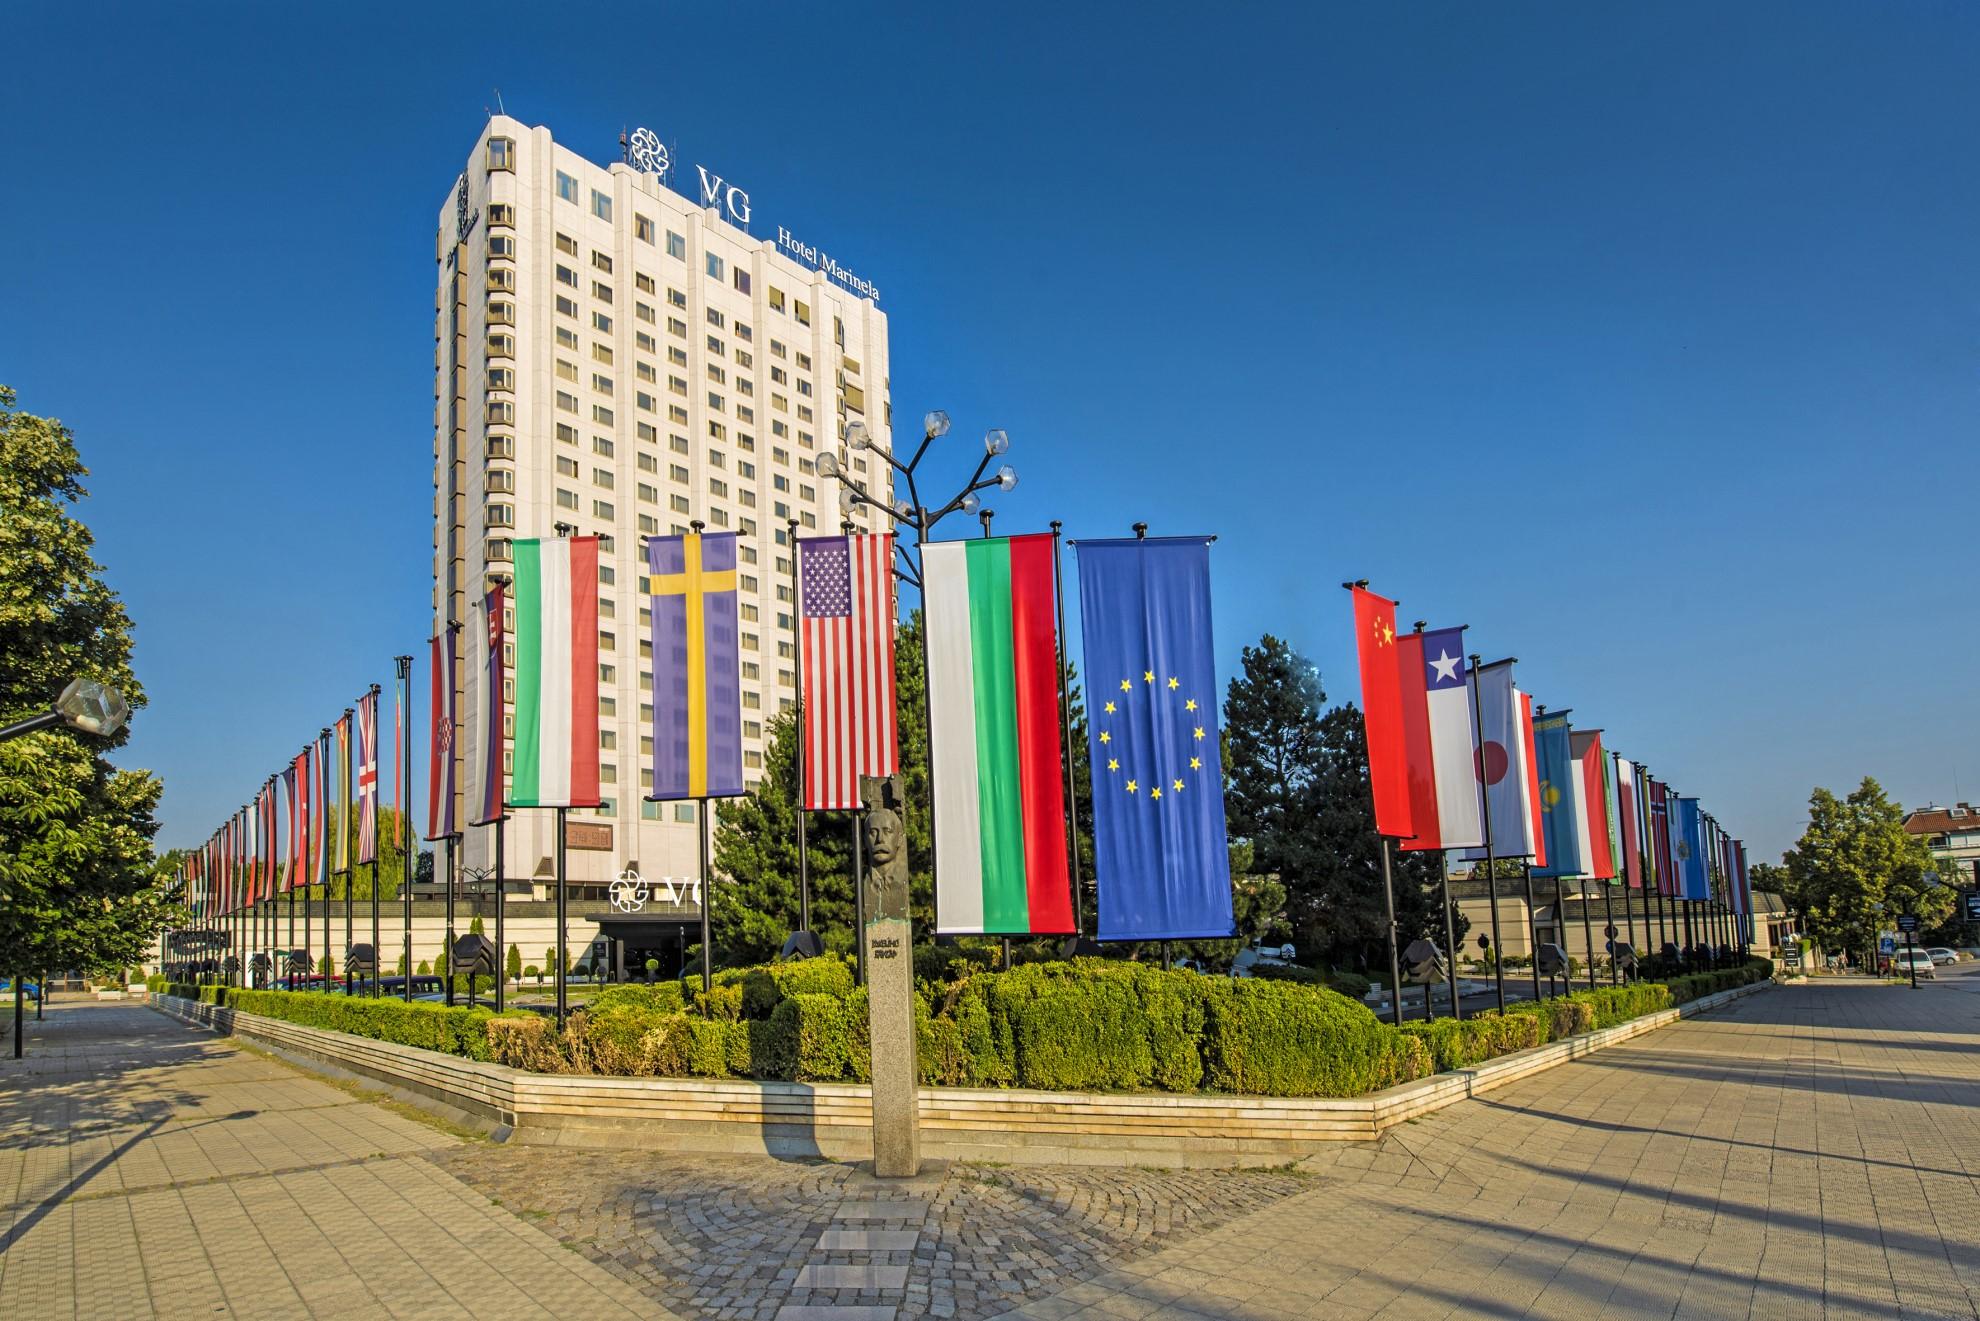 Хотел "Маринела" в София осигурява работа и настаняване на семейства от Укр